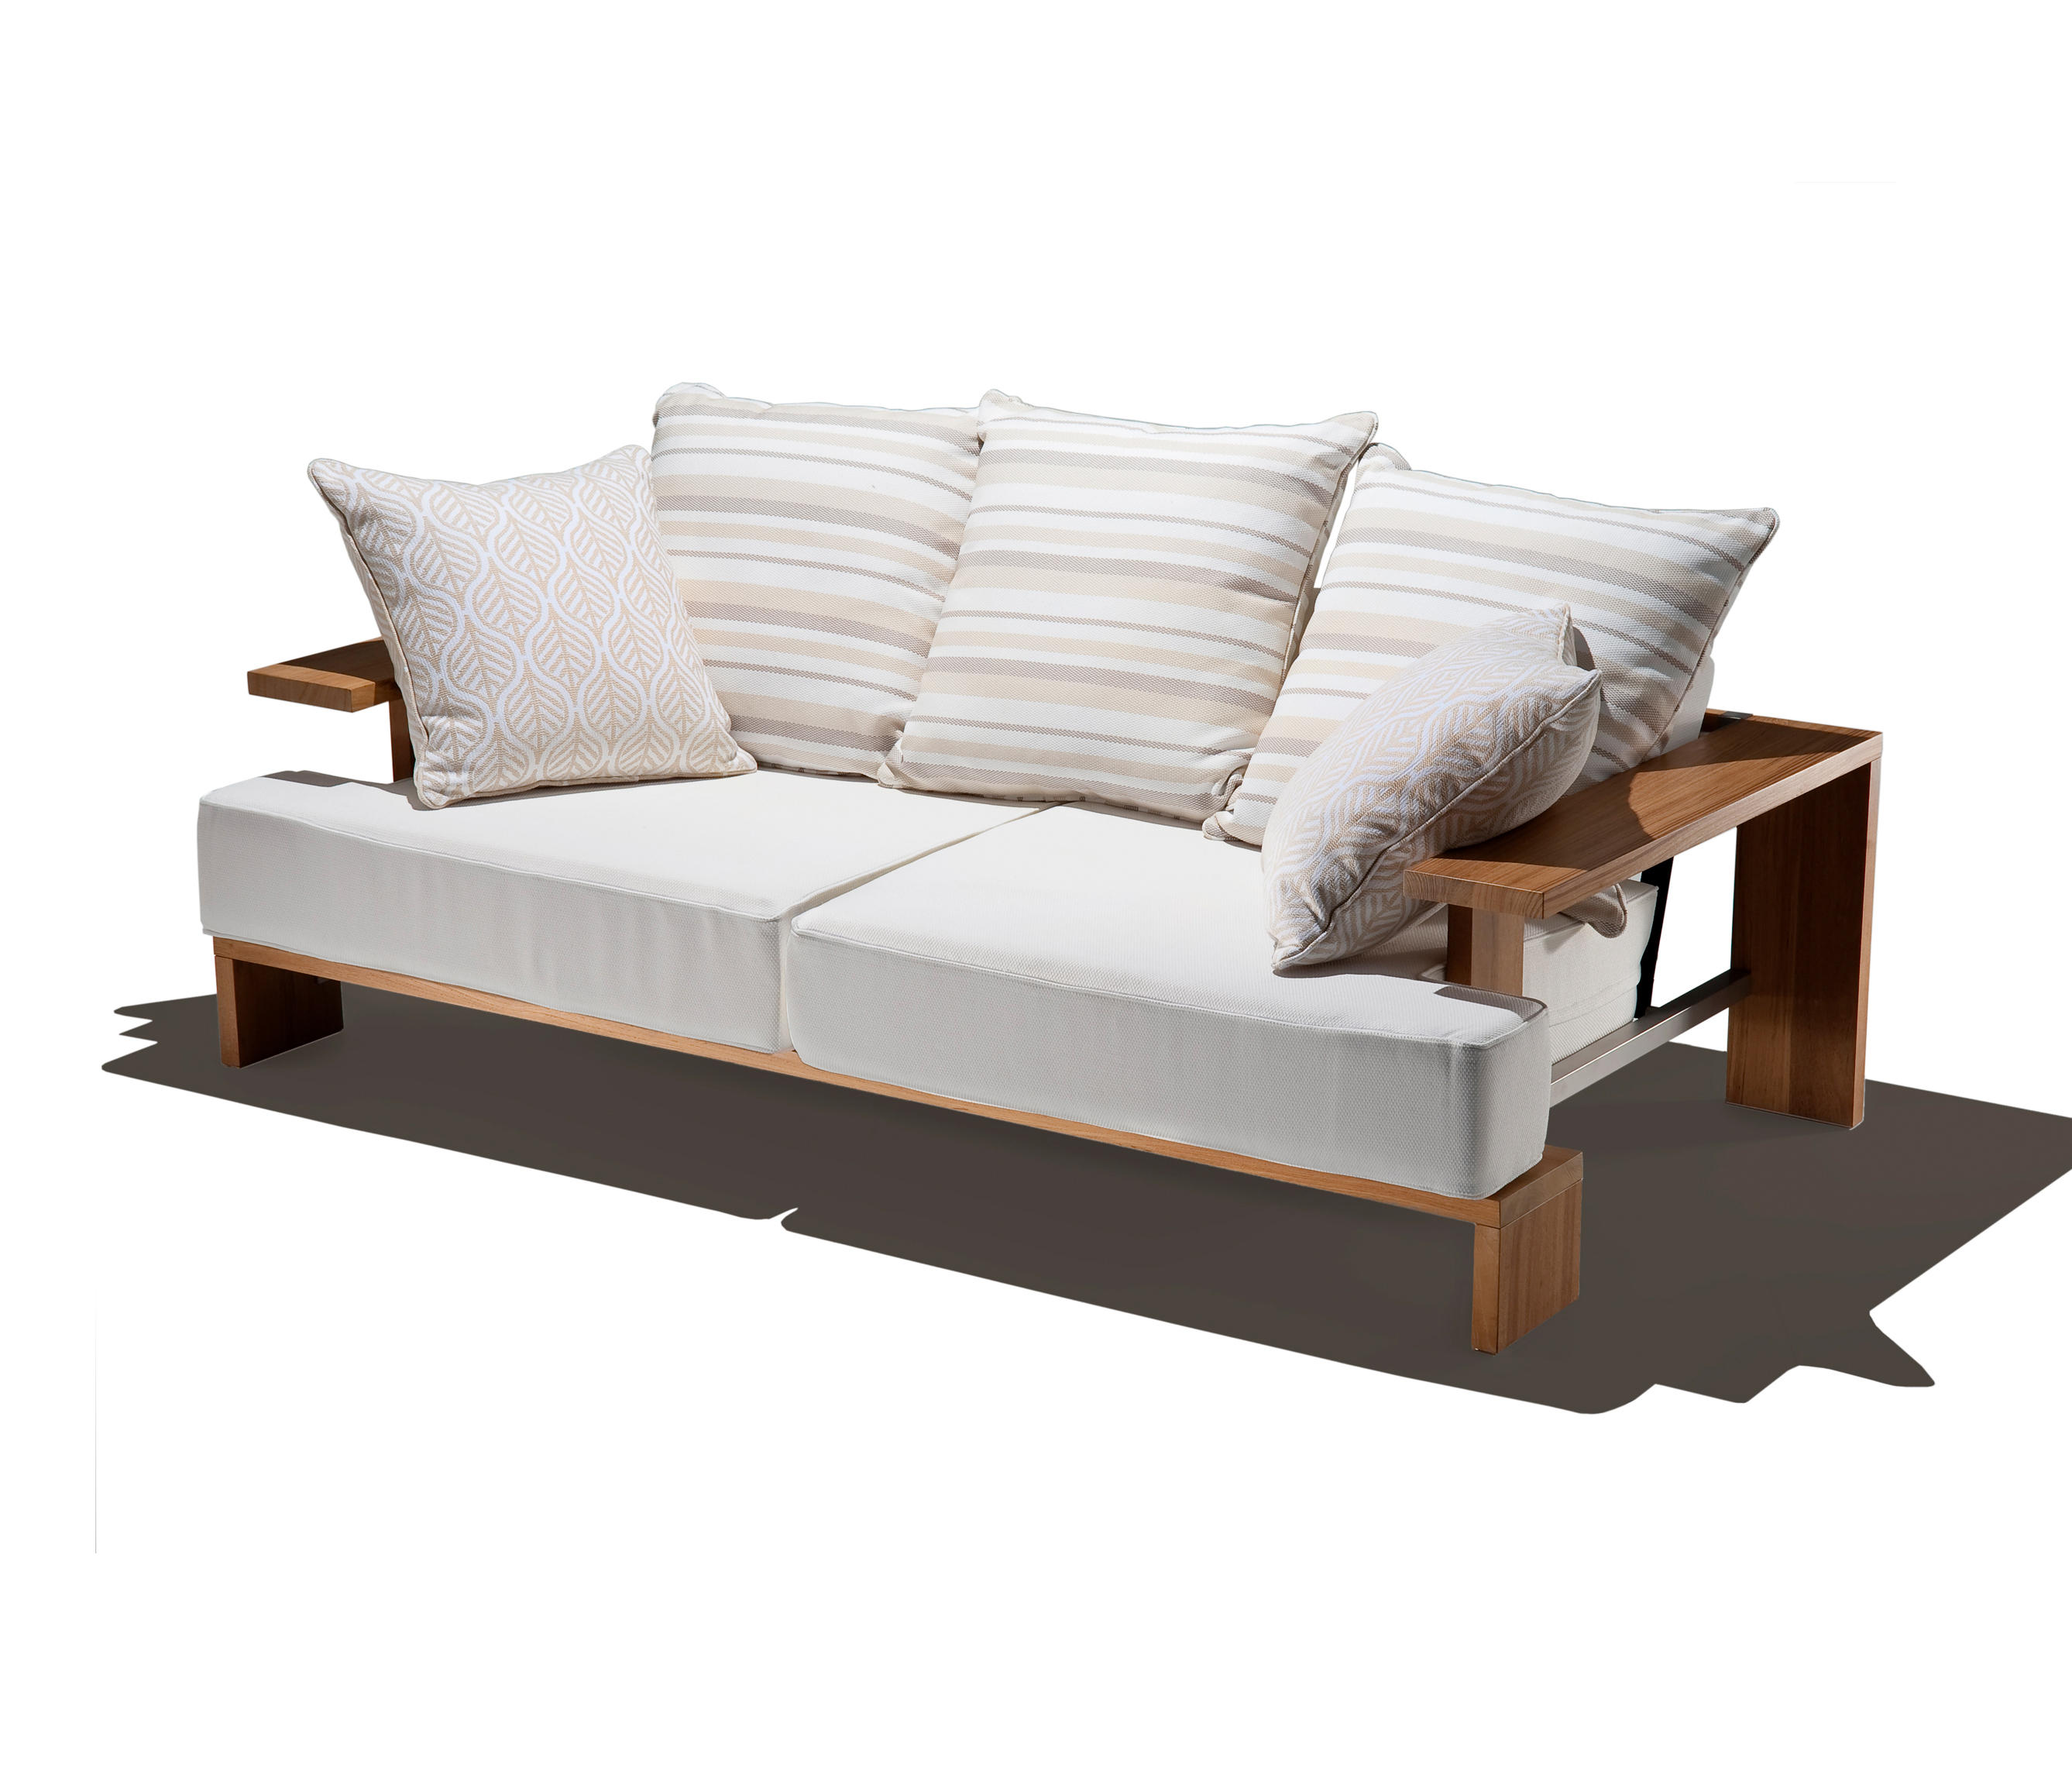 Bali collection divano divani sch nhuber franchi for Divano legno esterno